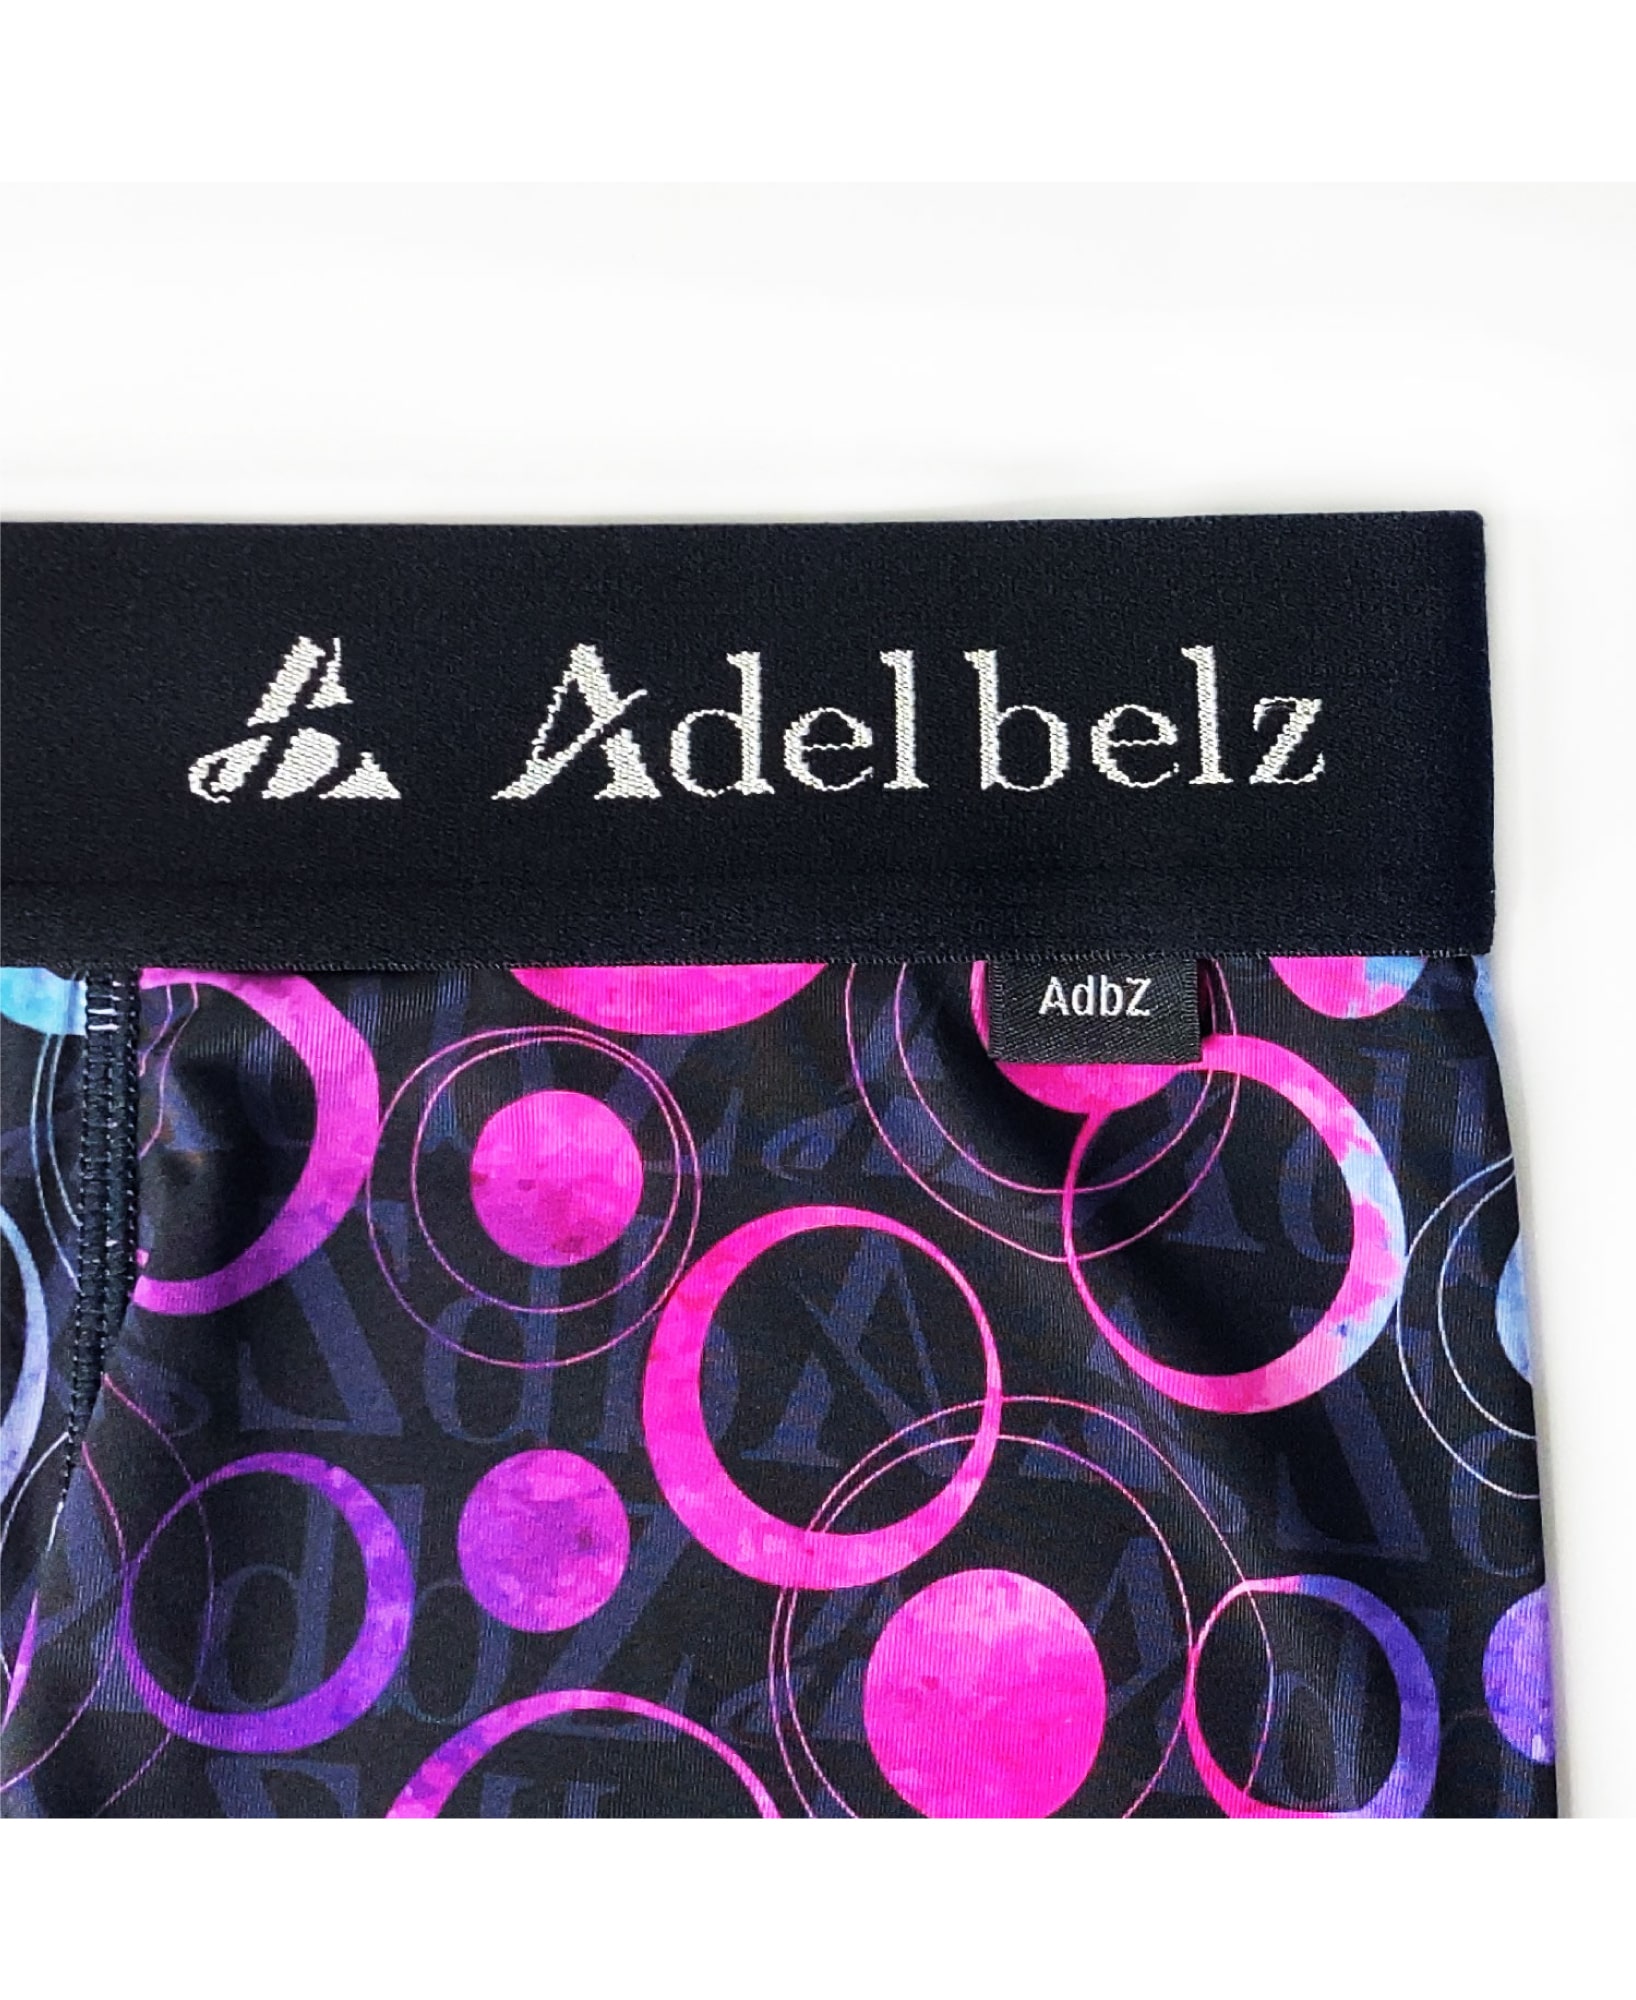 Adelbelz(アデルベルツ) BOXER ボクサーパンツ 高級 ブランド メンズ  ローライズ 男性下着 オシャレ ロゴ METEOR PHANTOM BLACK | デザイン詳細画像